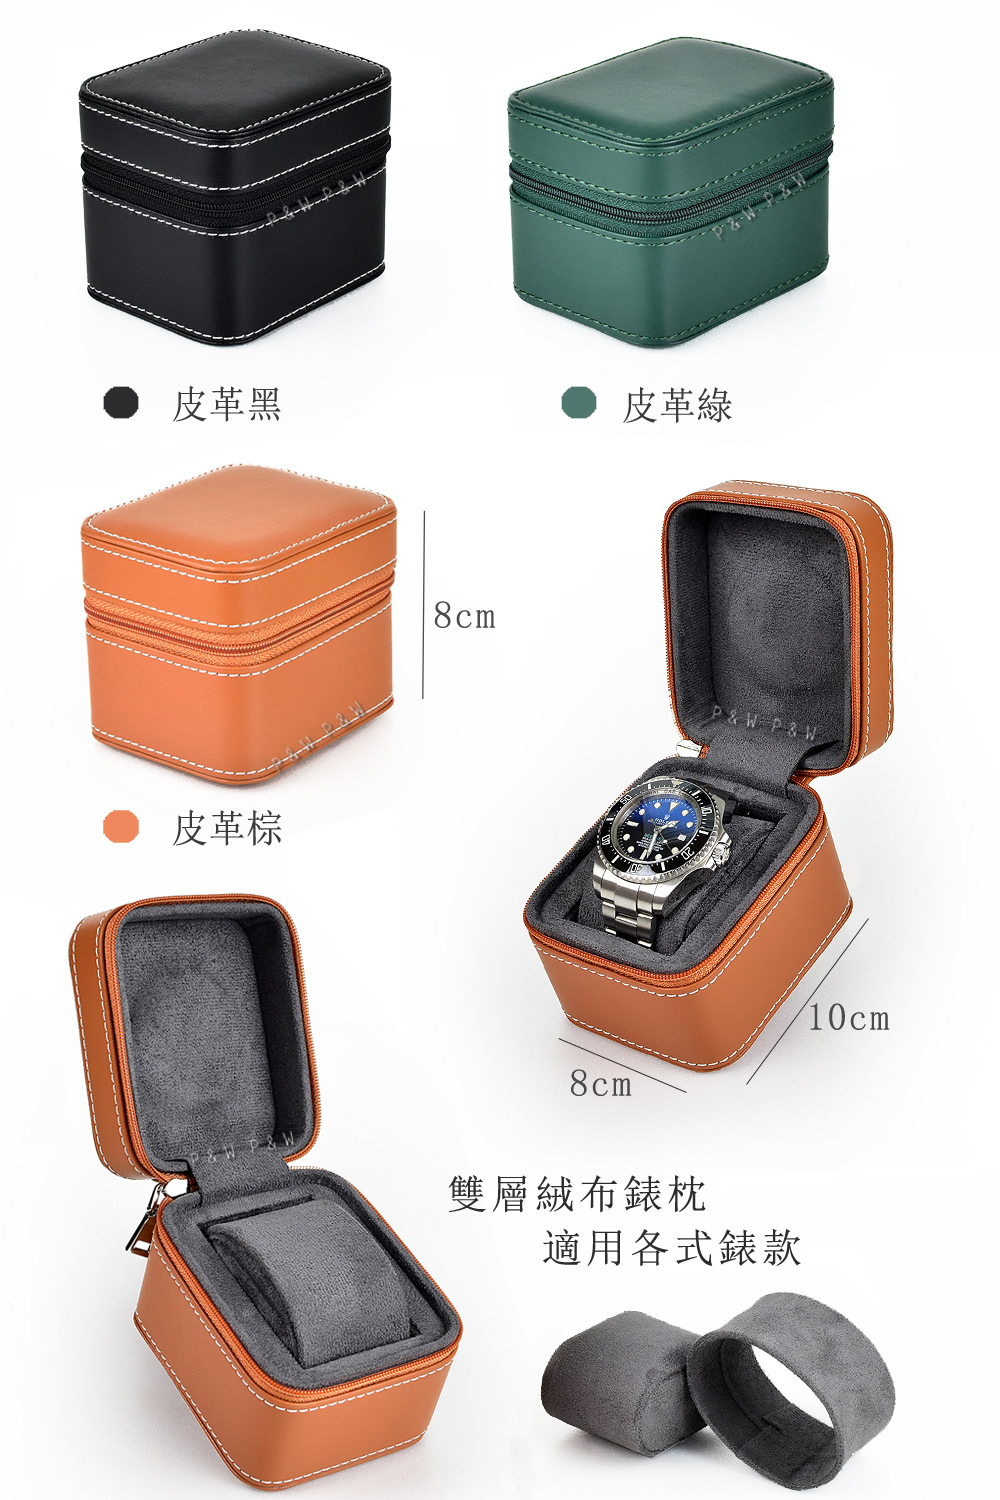 P&W 名錶收藏盒 1支裝 超纖皮革 手工精品錶盒 方型(大